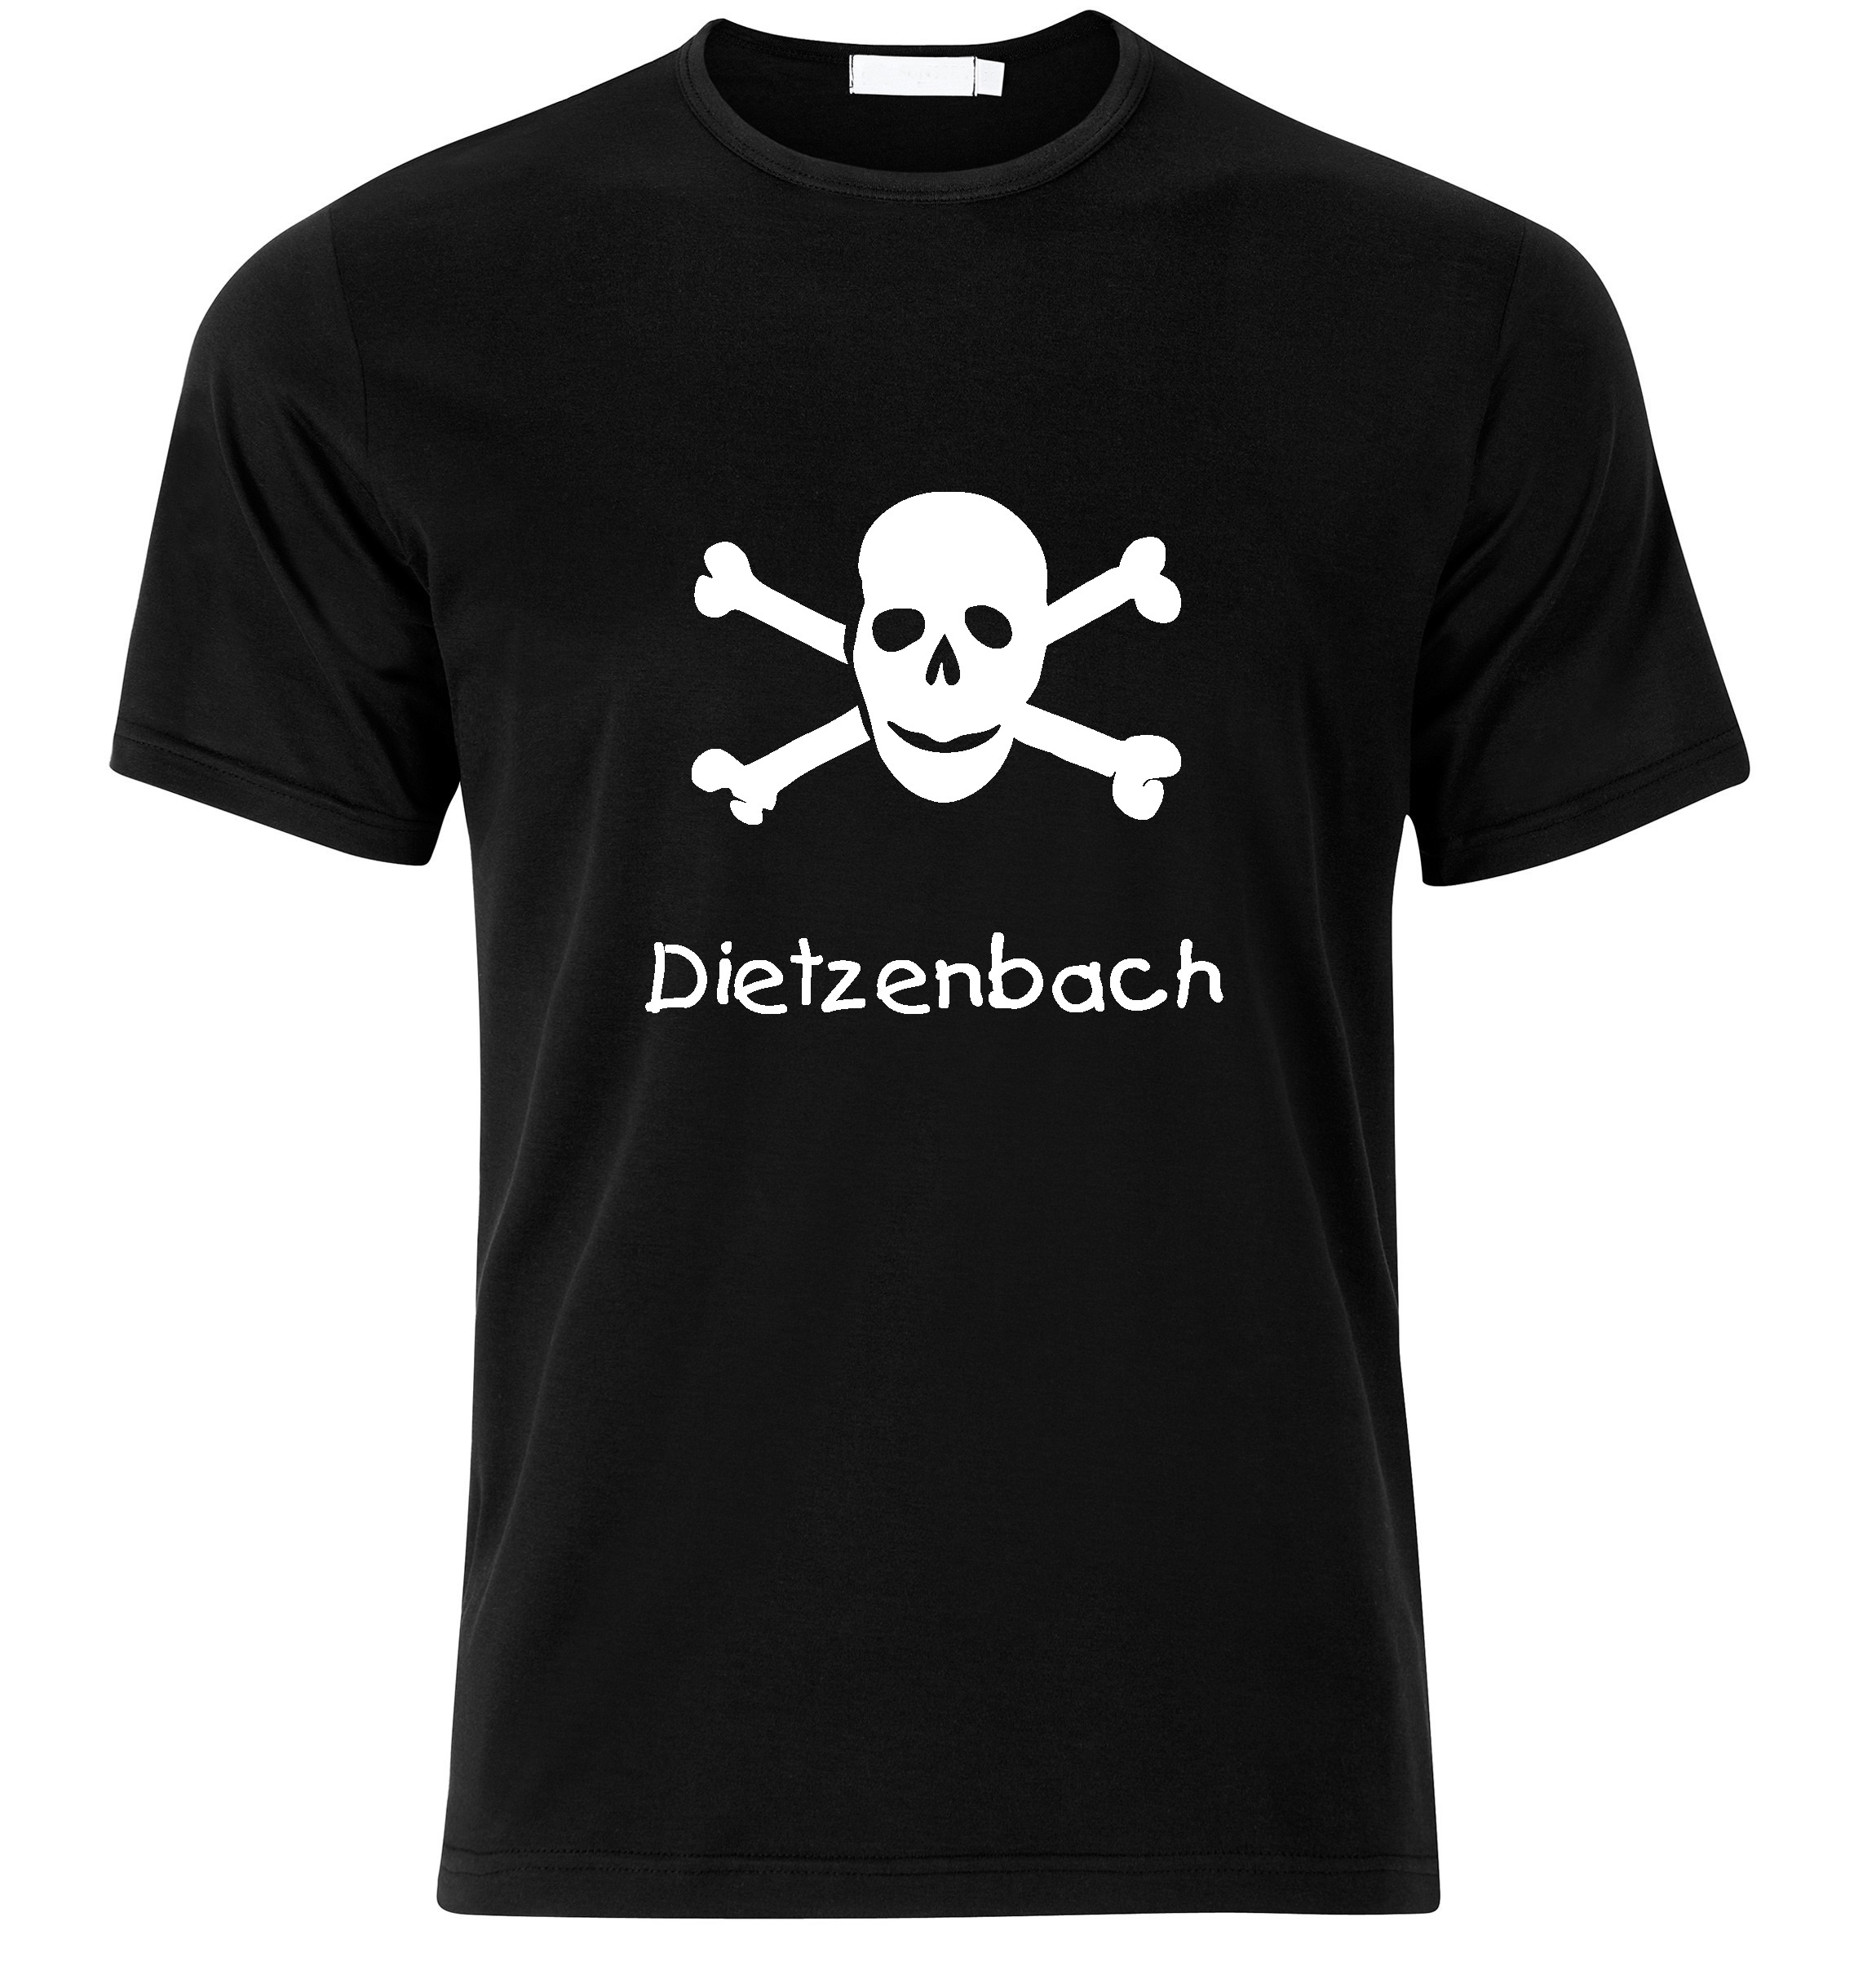 T-Shirt Dietzenbach Jolly Roger, Totenkopf